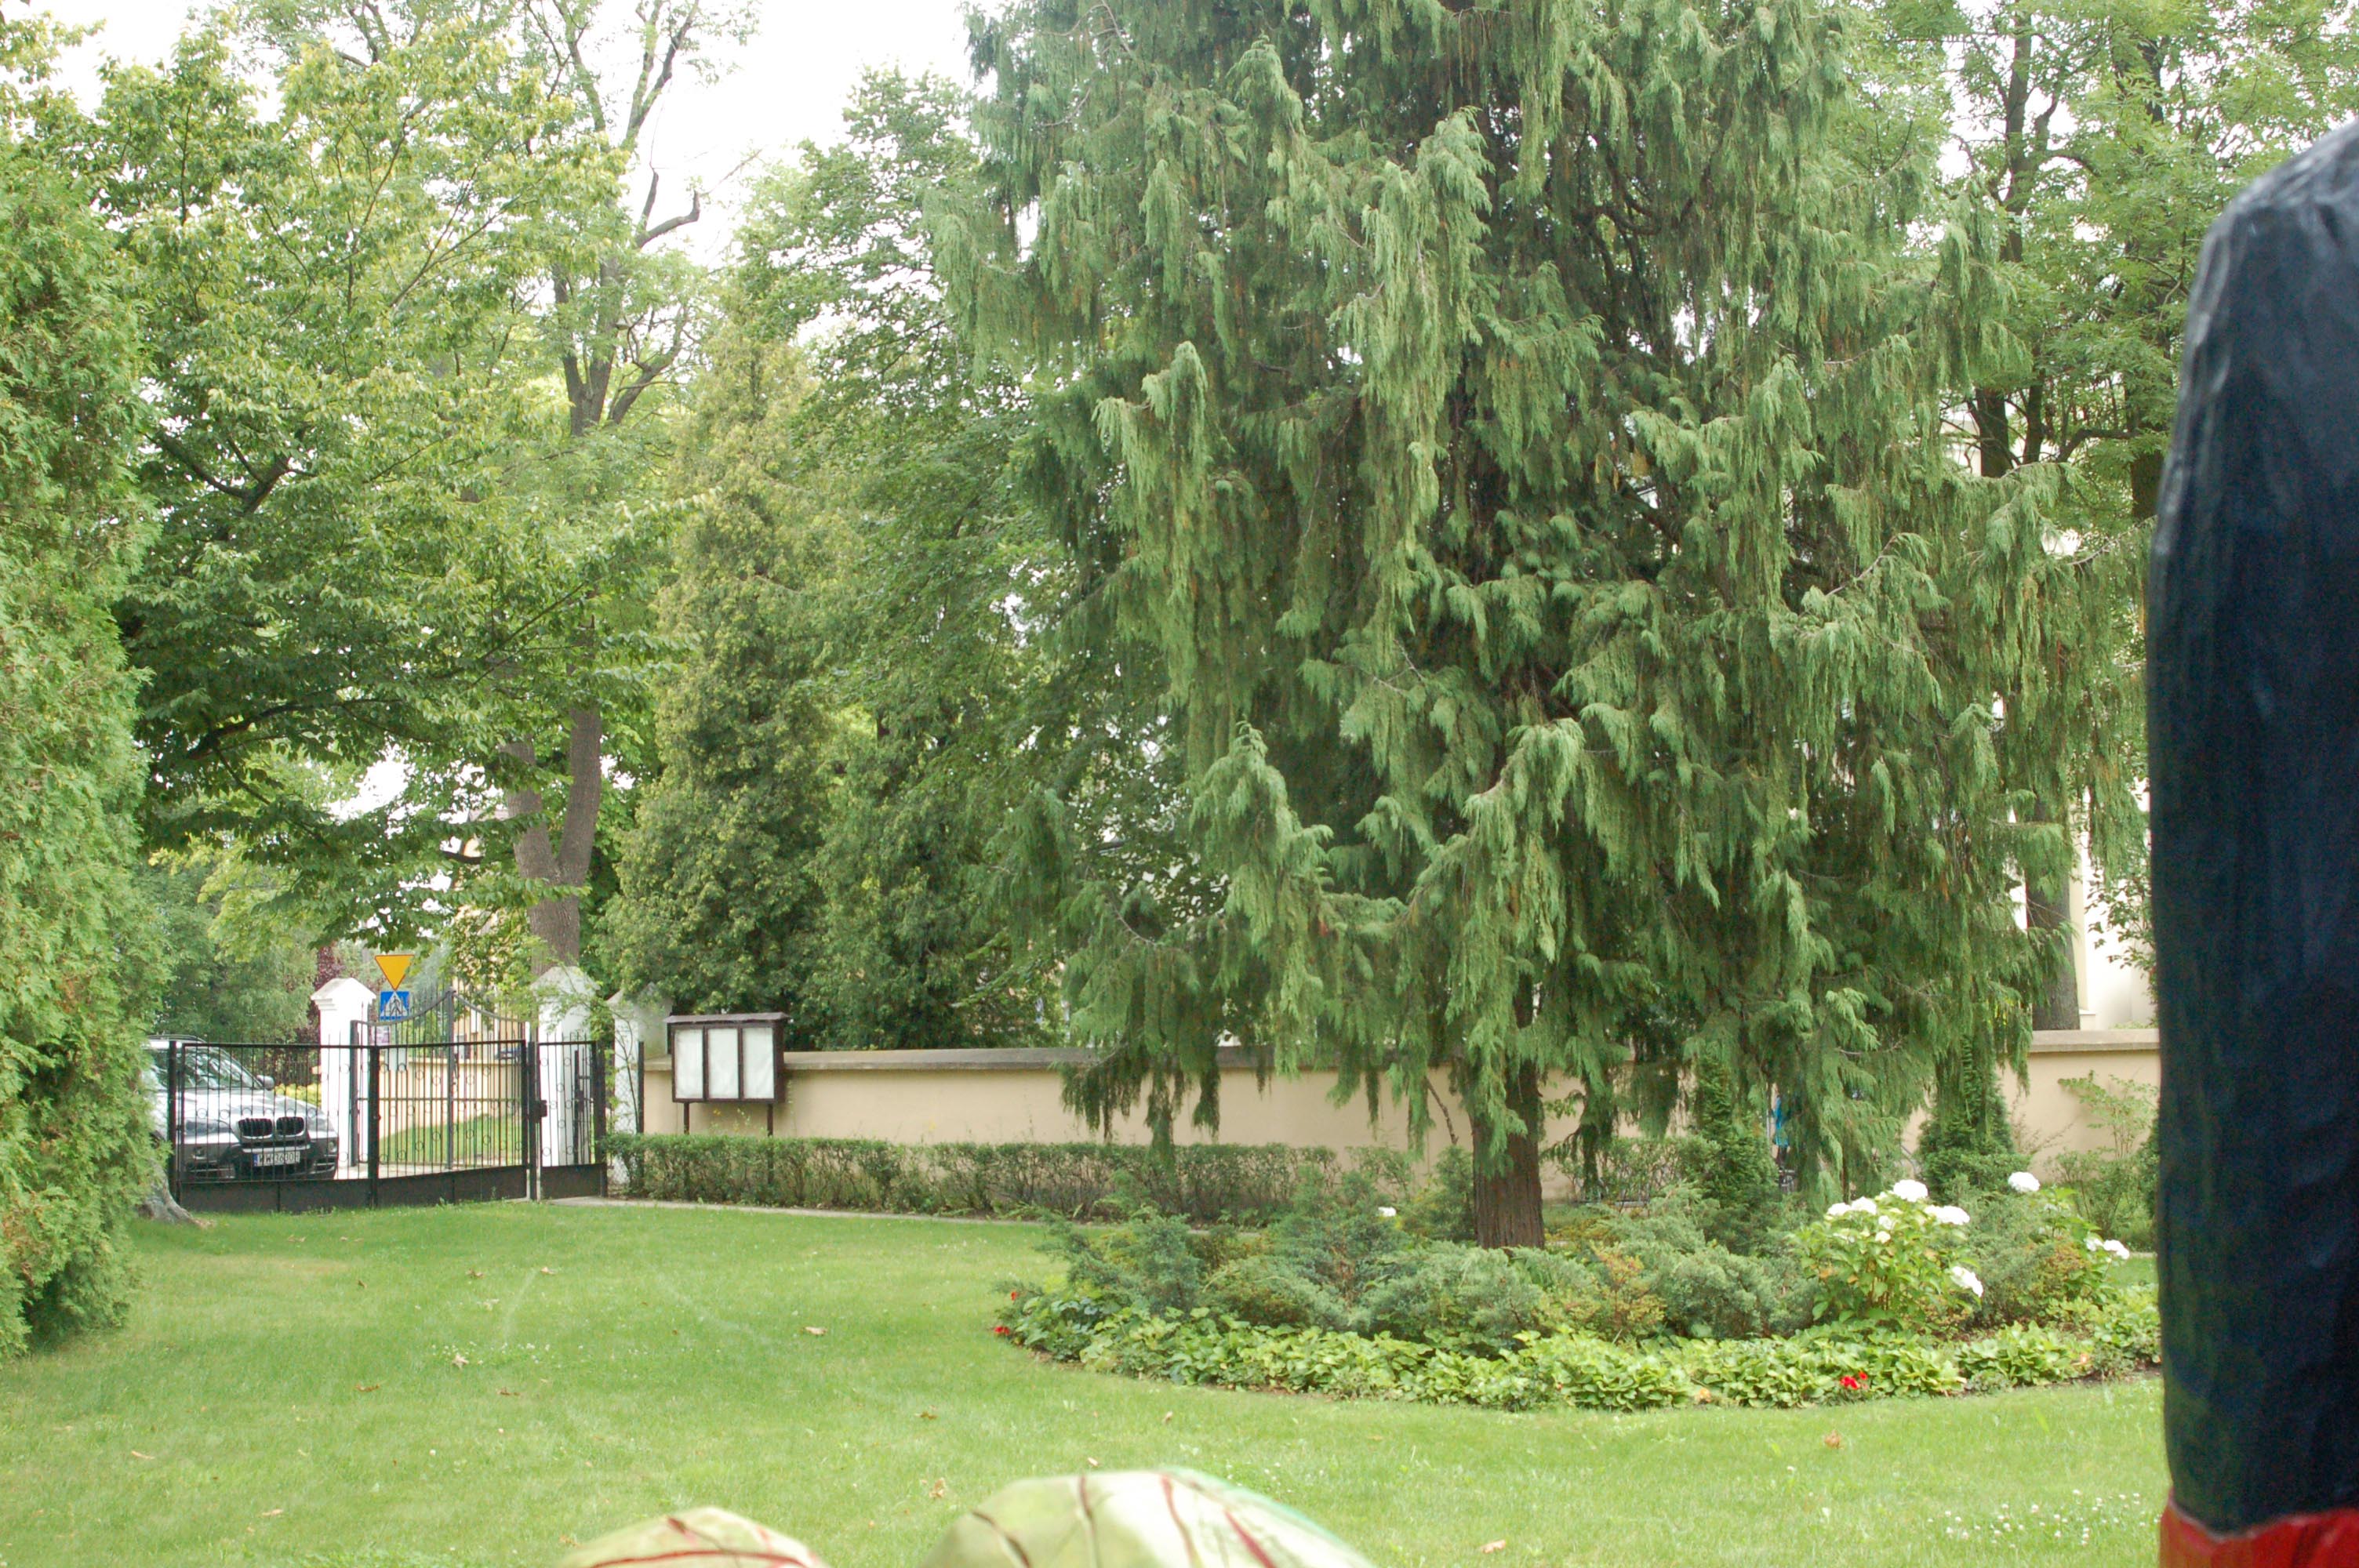 Zdjęcie zadbanego ogrodu z dużą ilością trawy, klombem i dużym drzewem.